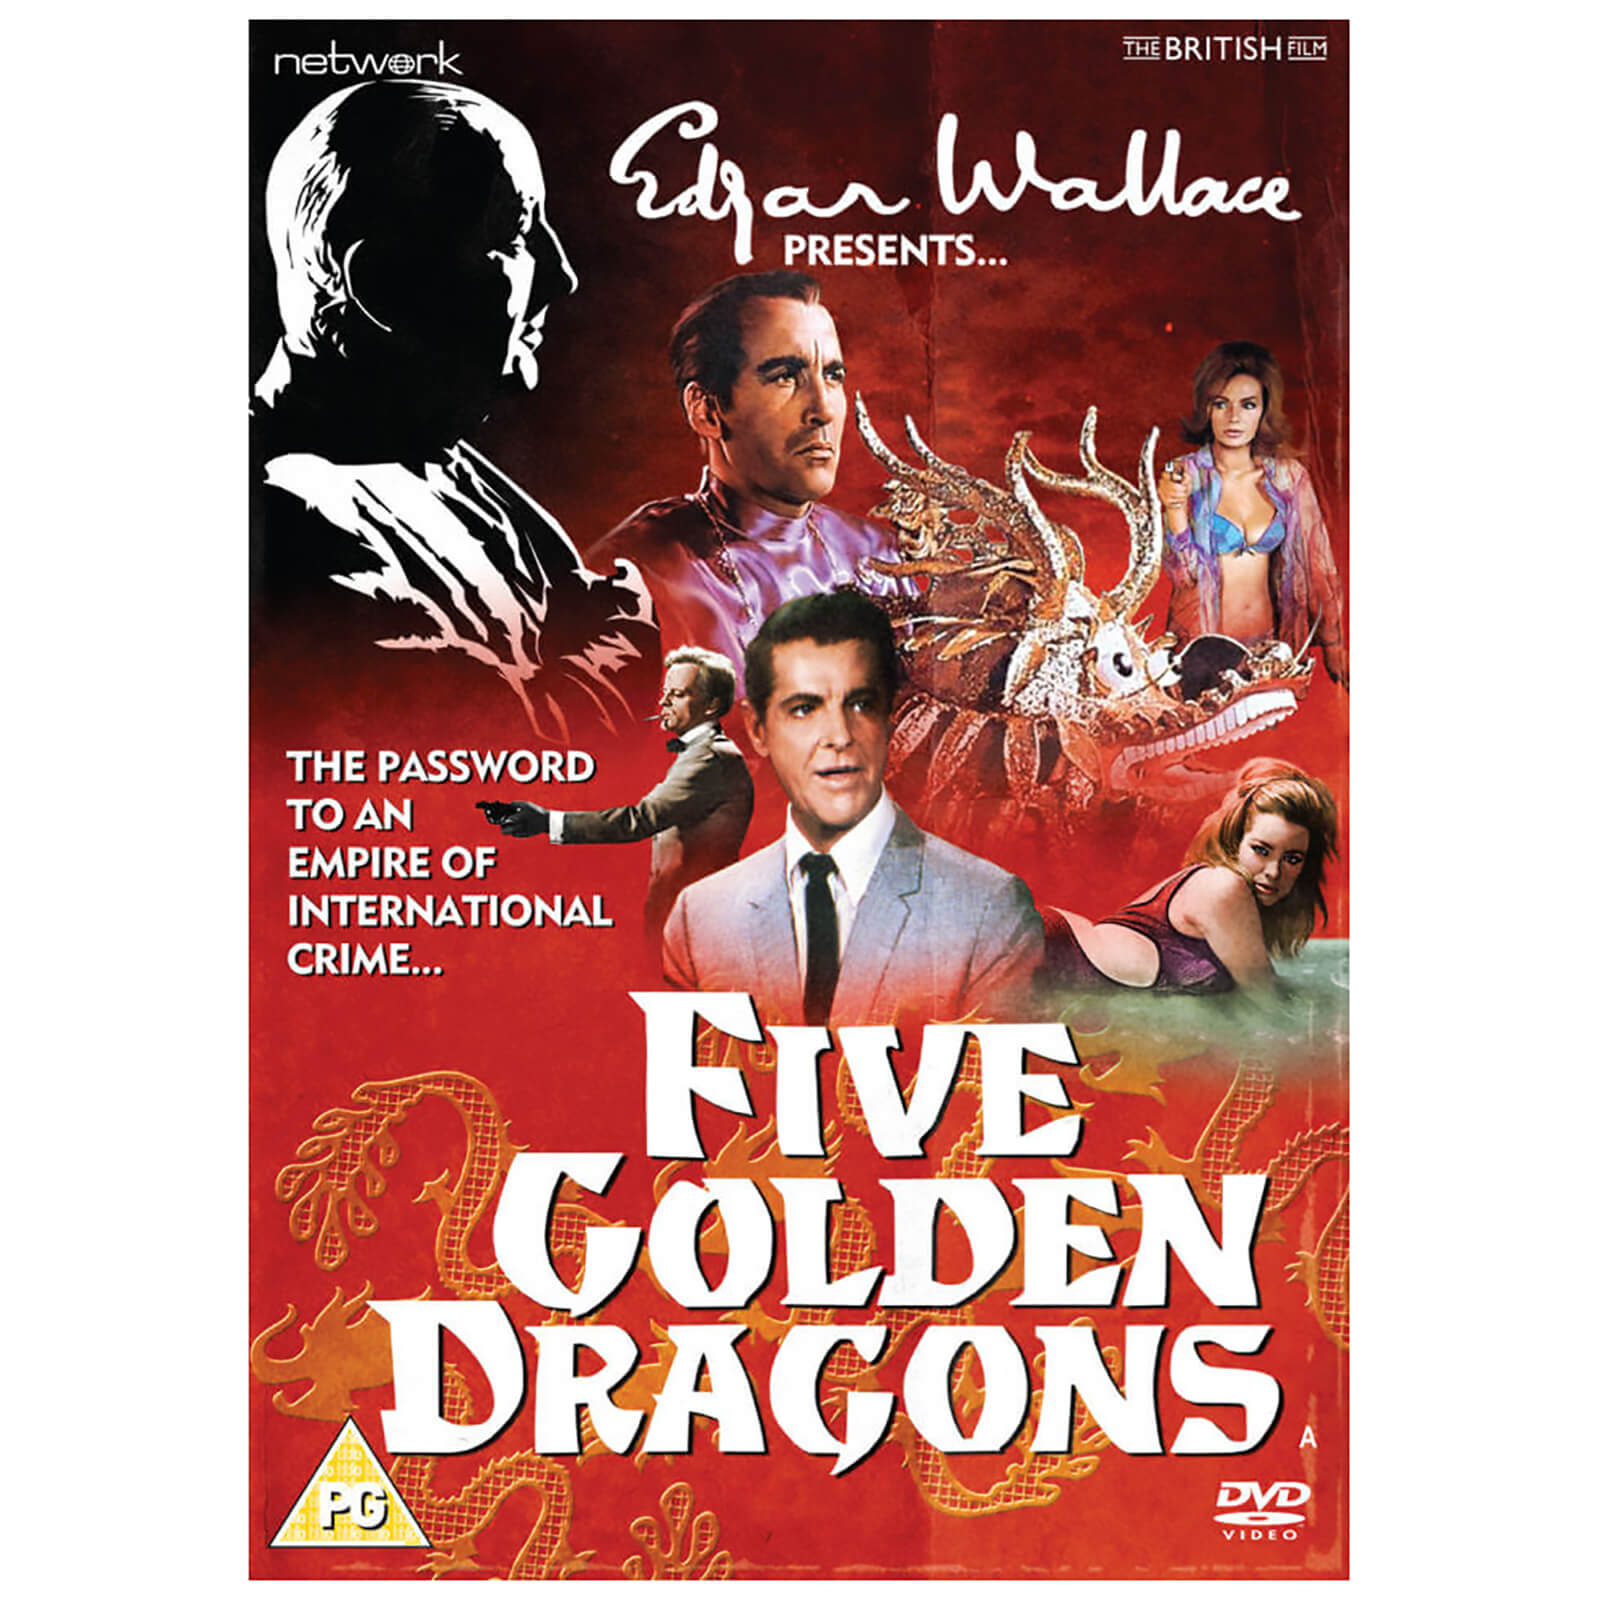 network edgar wallace present: five golden dragons